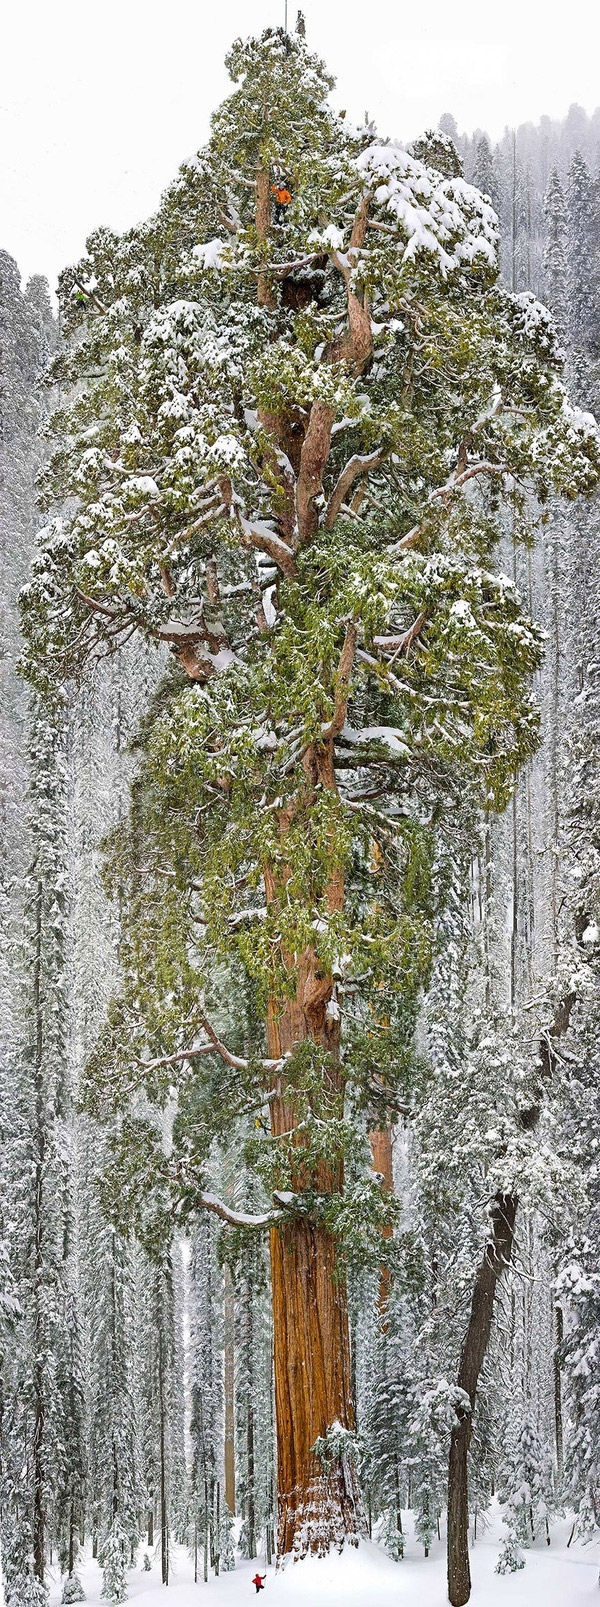 
Cây Sequoia là loài cây cao nhất nhì trong giới thực vật. Riêng cây này có chiều cao 73 mét và đường kính rộng nhất 28 mét. Được biết, đây là cây Sequoia lớn thứ 3 trên thế giới. (Ảnh: Internet)